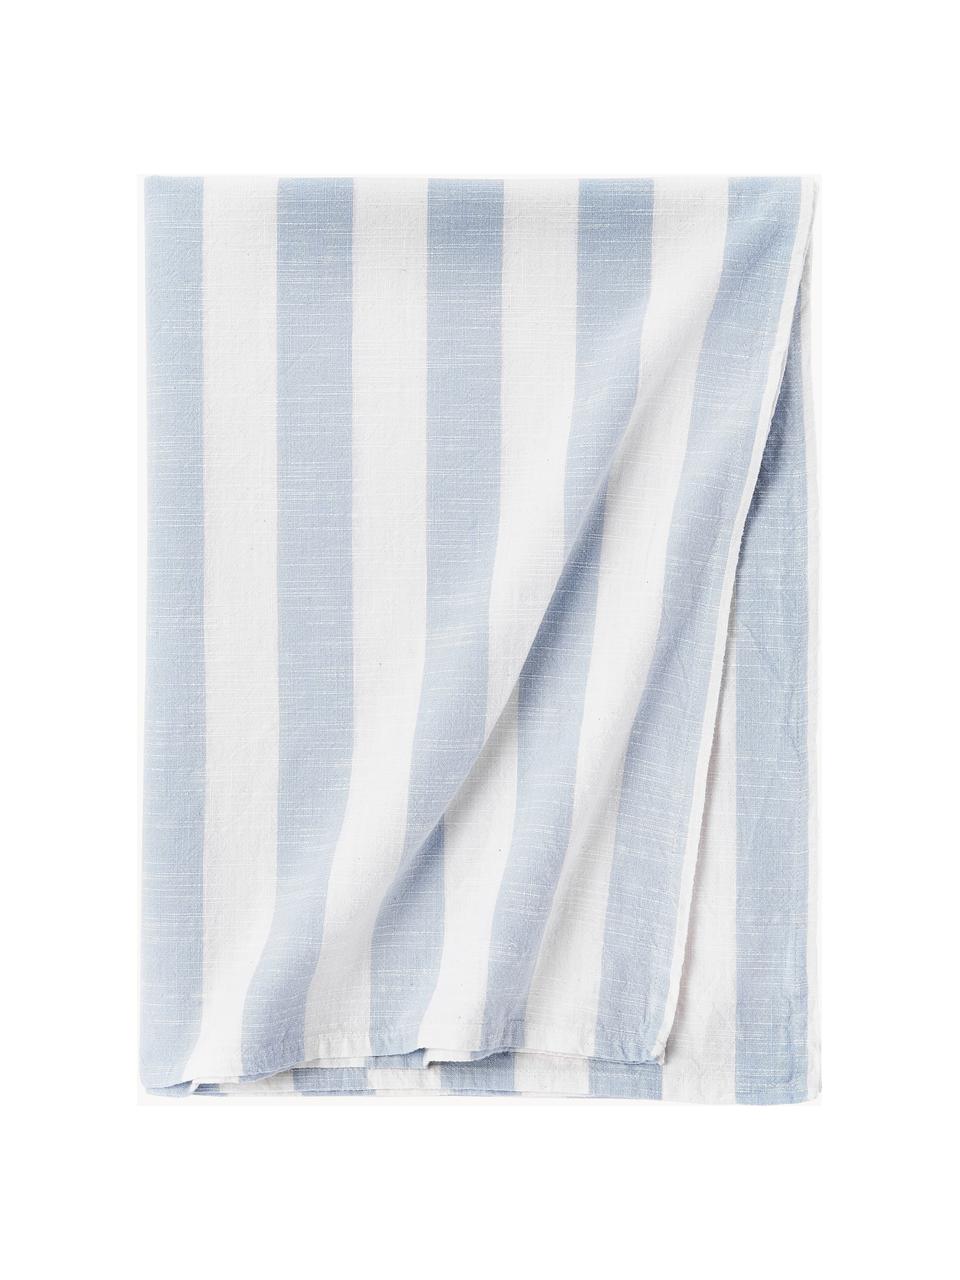 Gestreept tafelkleed Strip, 100% katoen, Wit, lichtblauw, 6-8 personen (B 140 x L 200 cm)